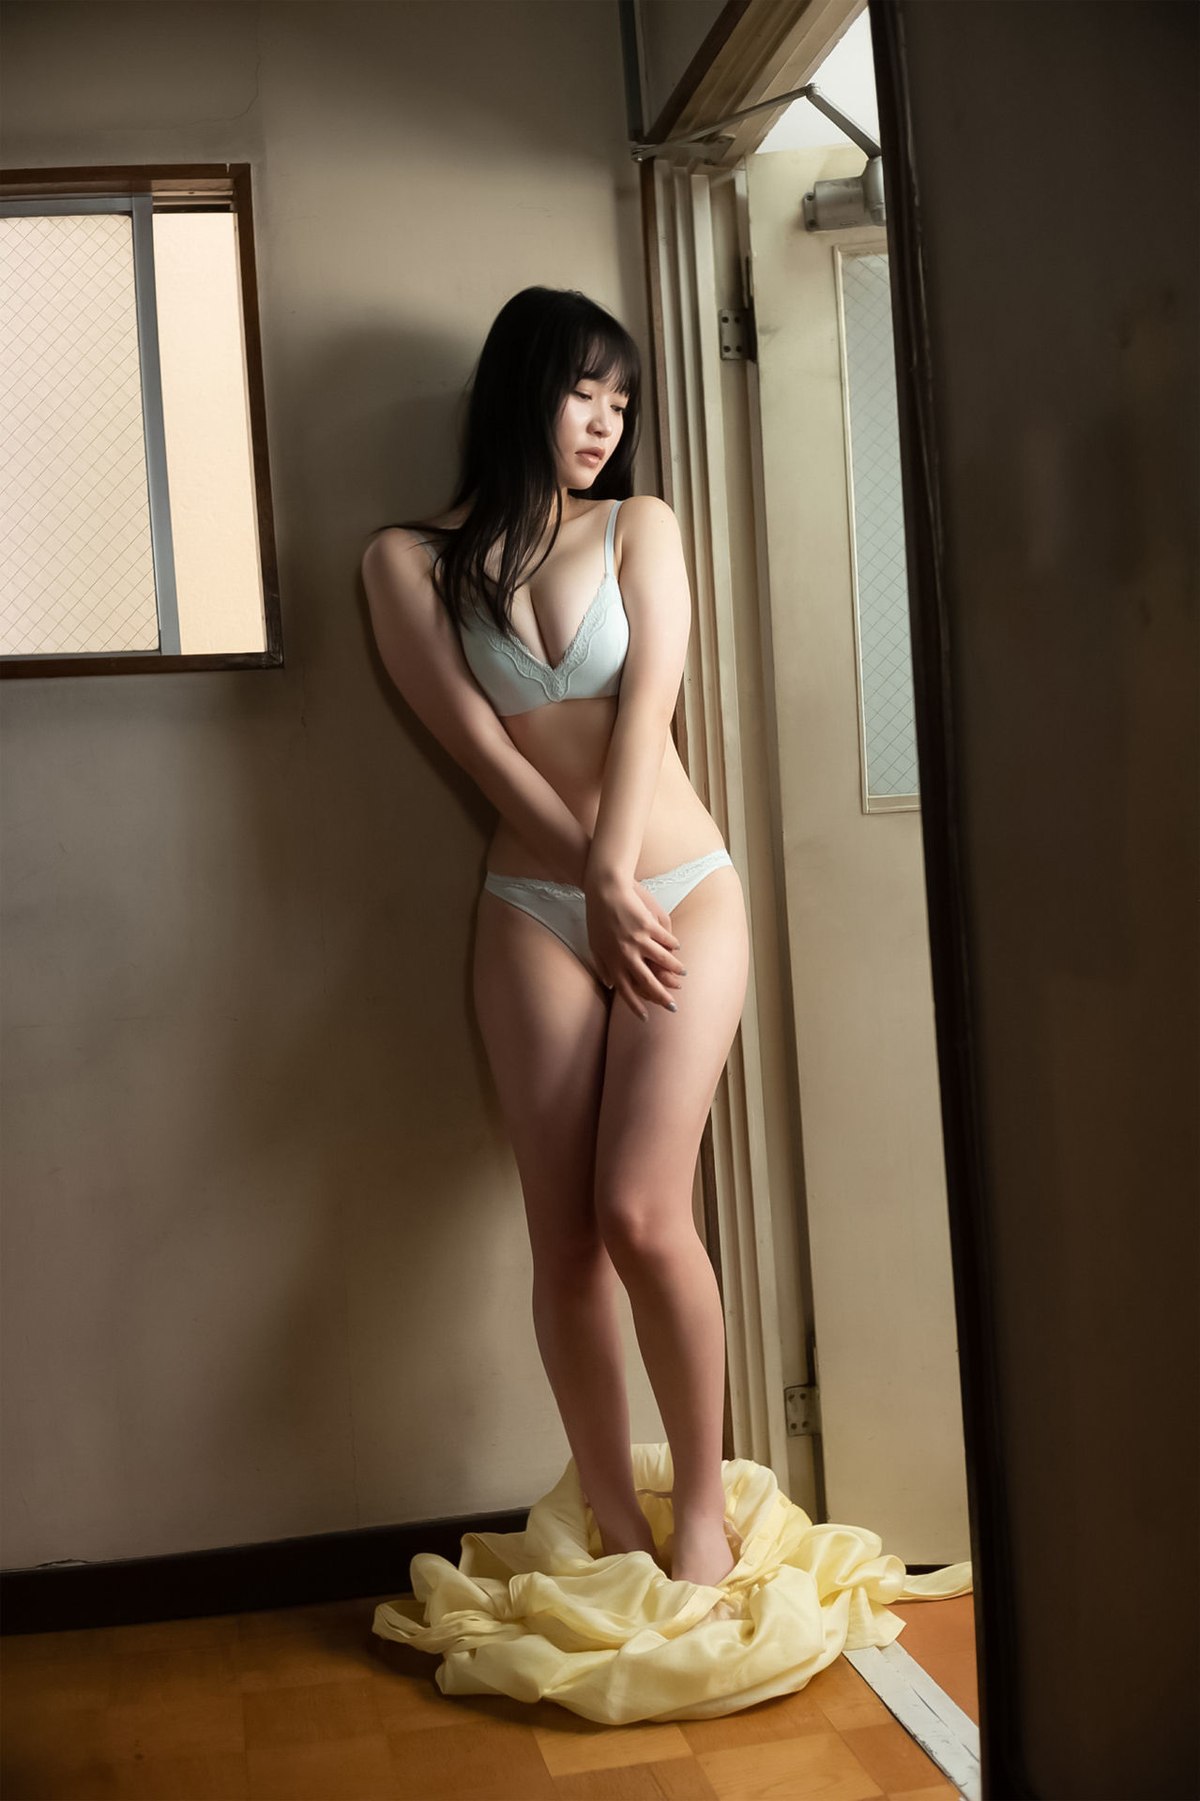 Weekly Gendai Photobook 2023 07 09 Suzuka Sayama 佐山すずか Body Wet In The Shower 0058 3450336303.jpg